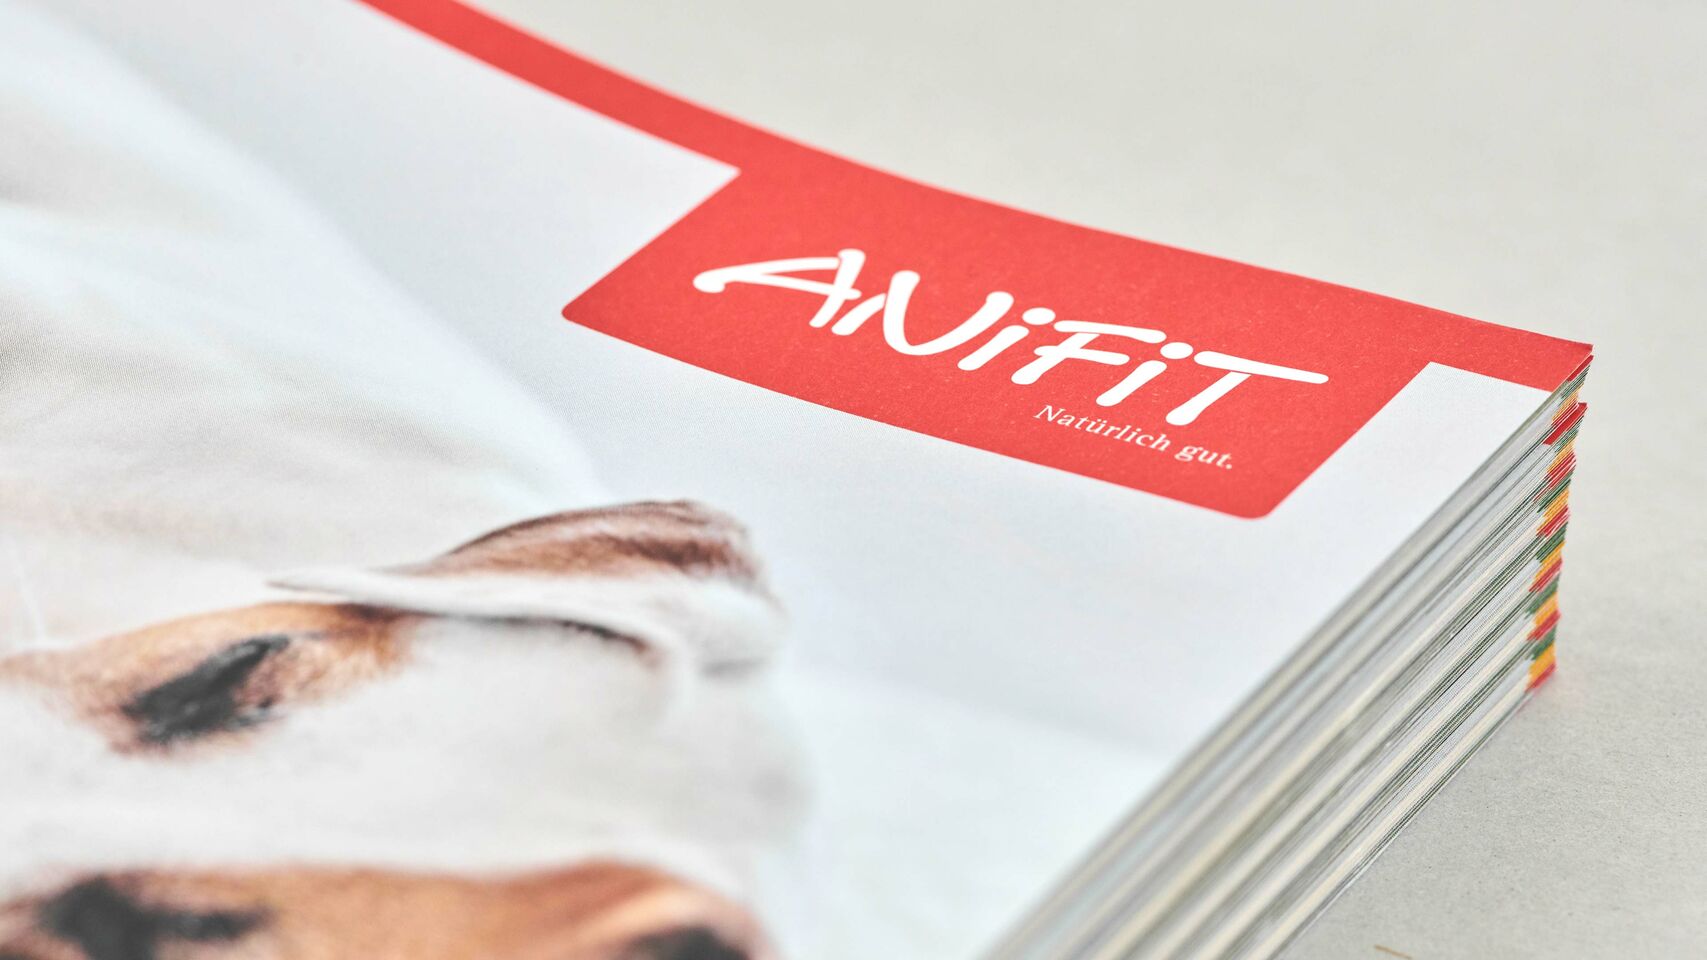 AniFit - Broschüre